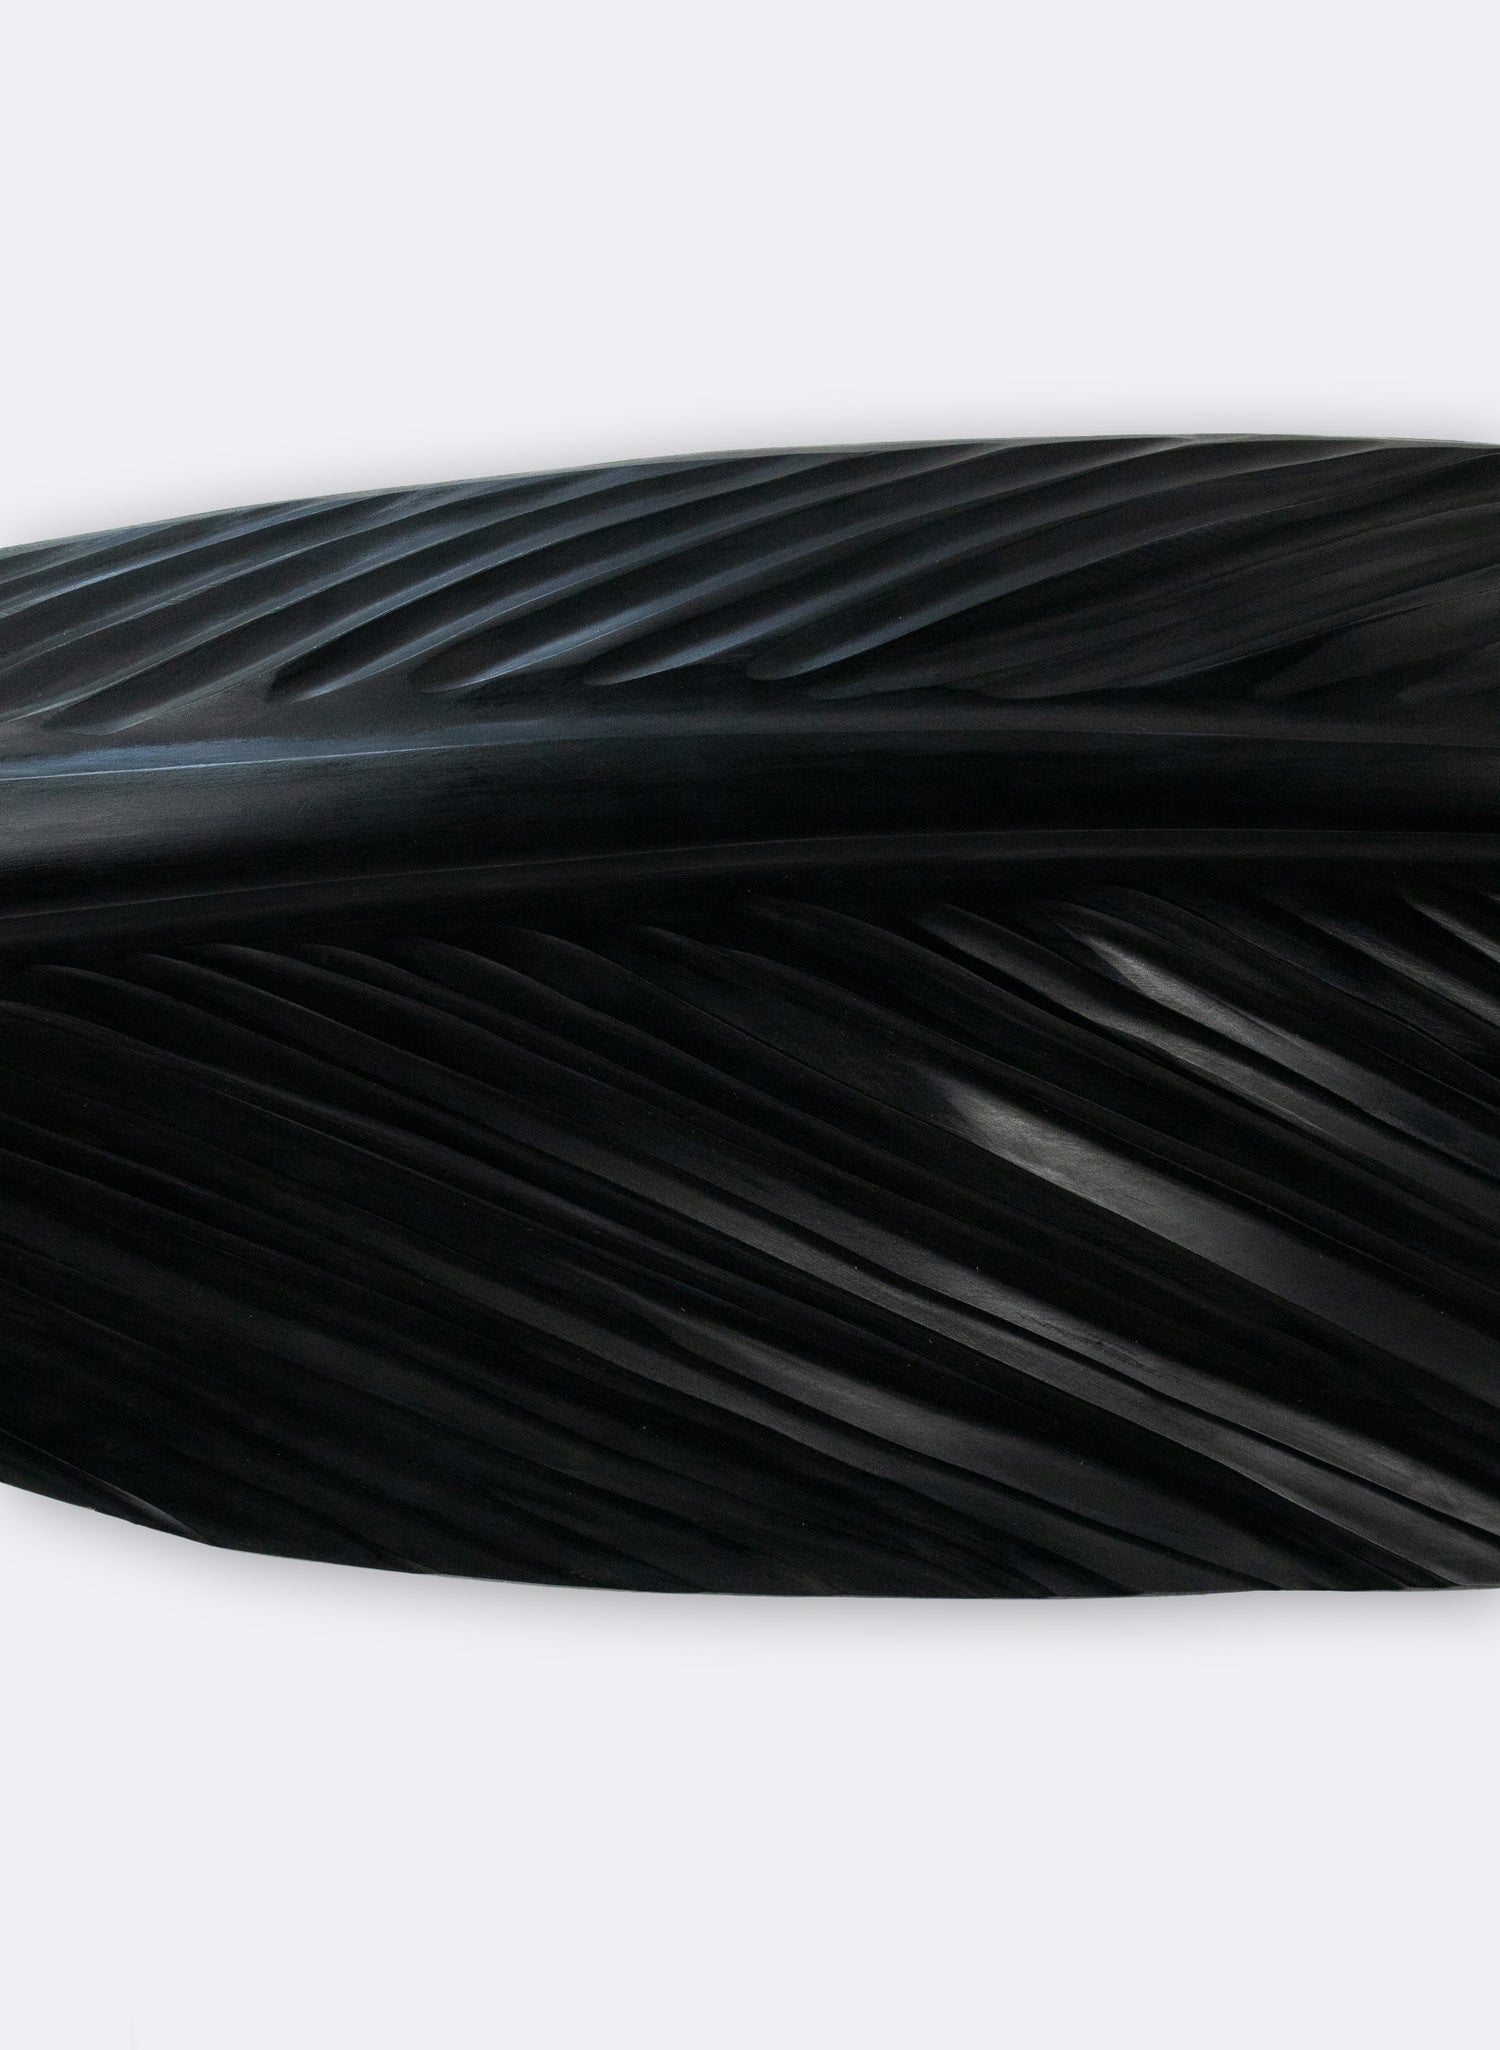 Tui Feather 1380mm - Black Swamp Kauri